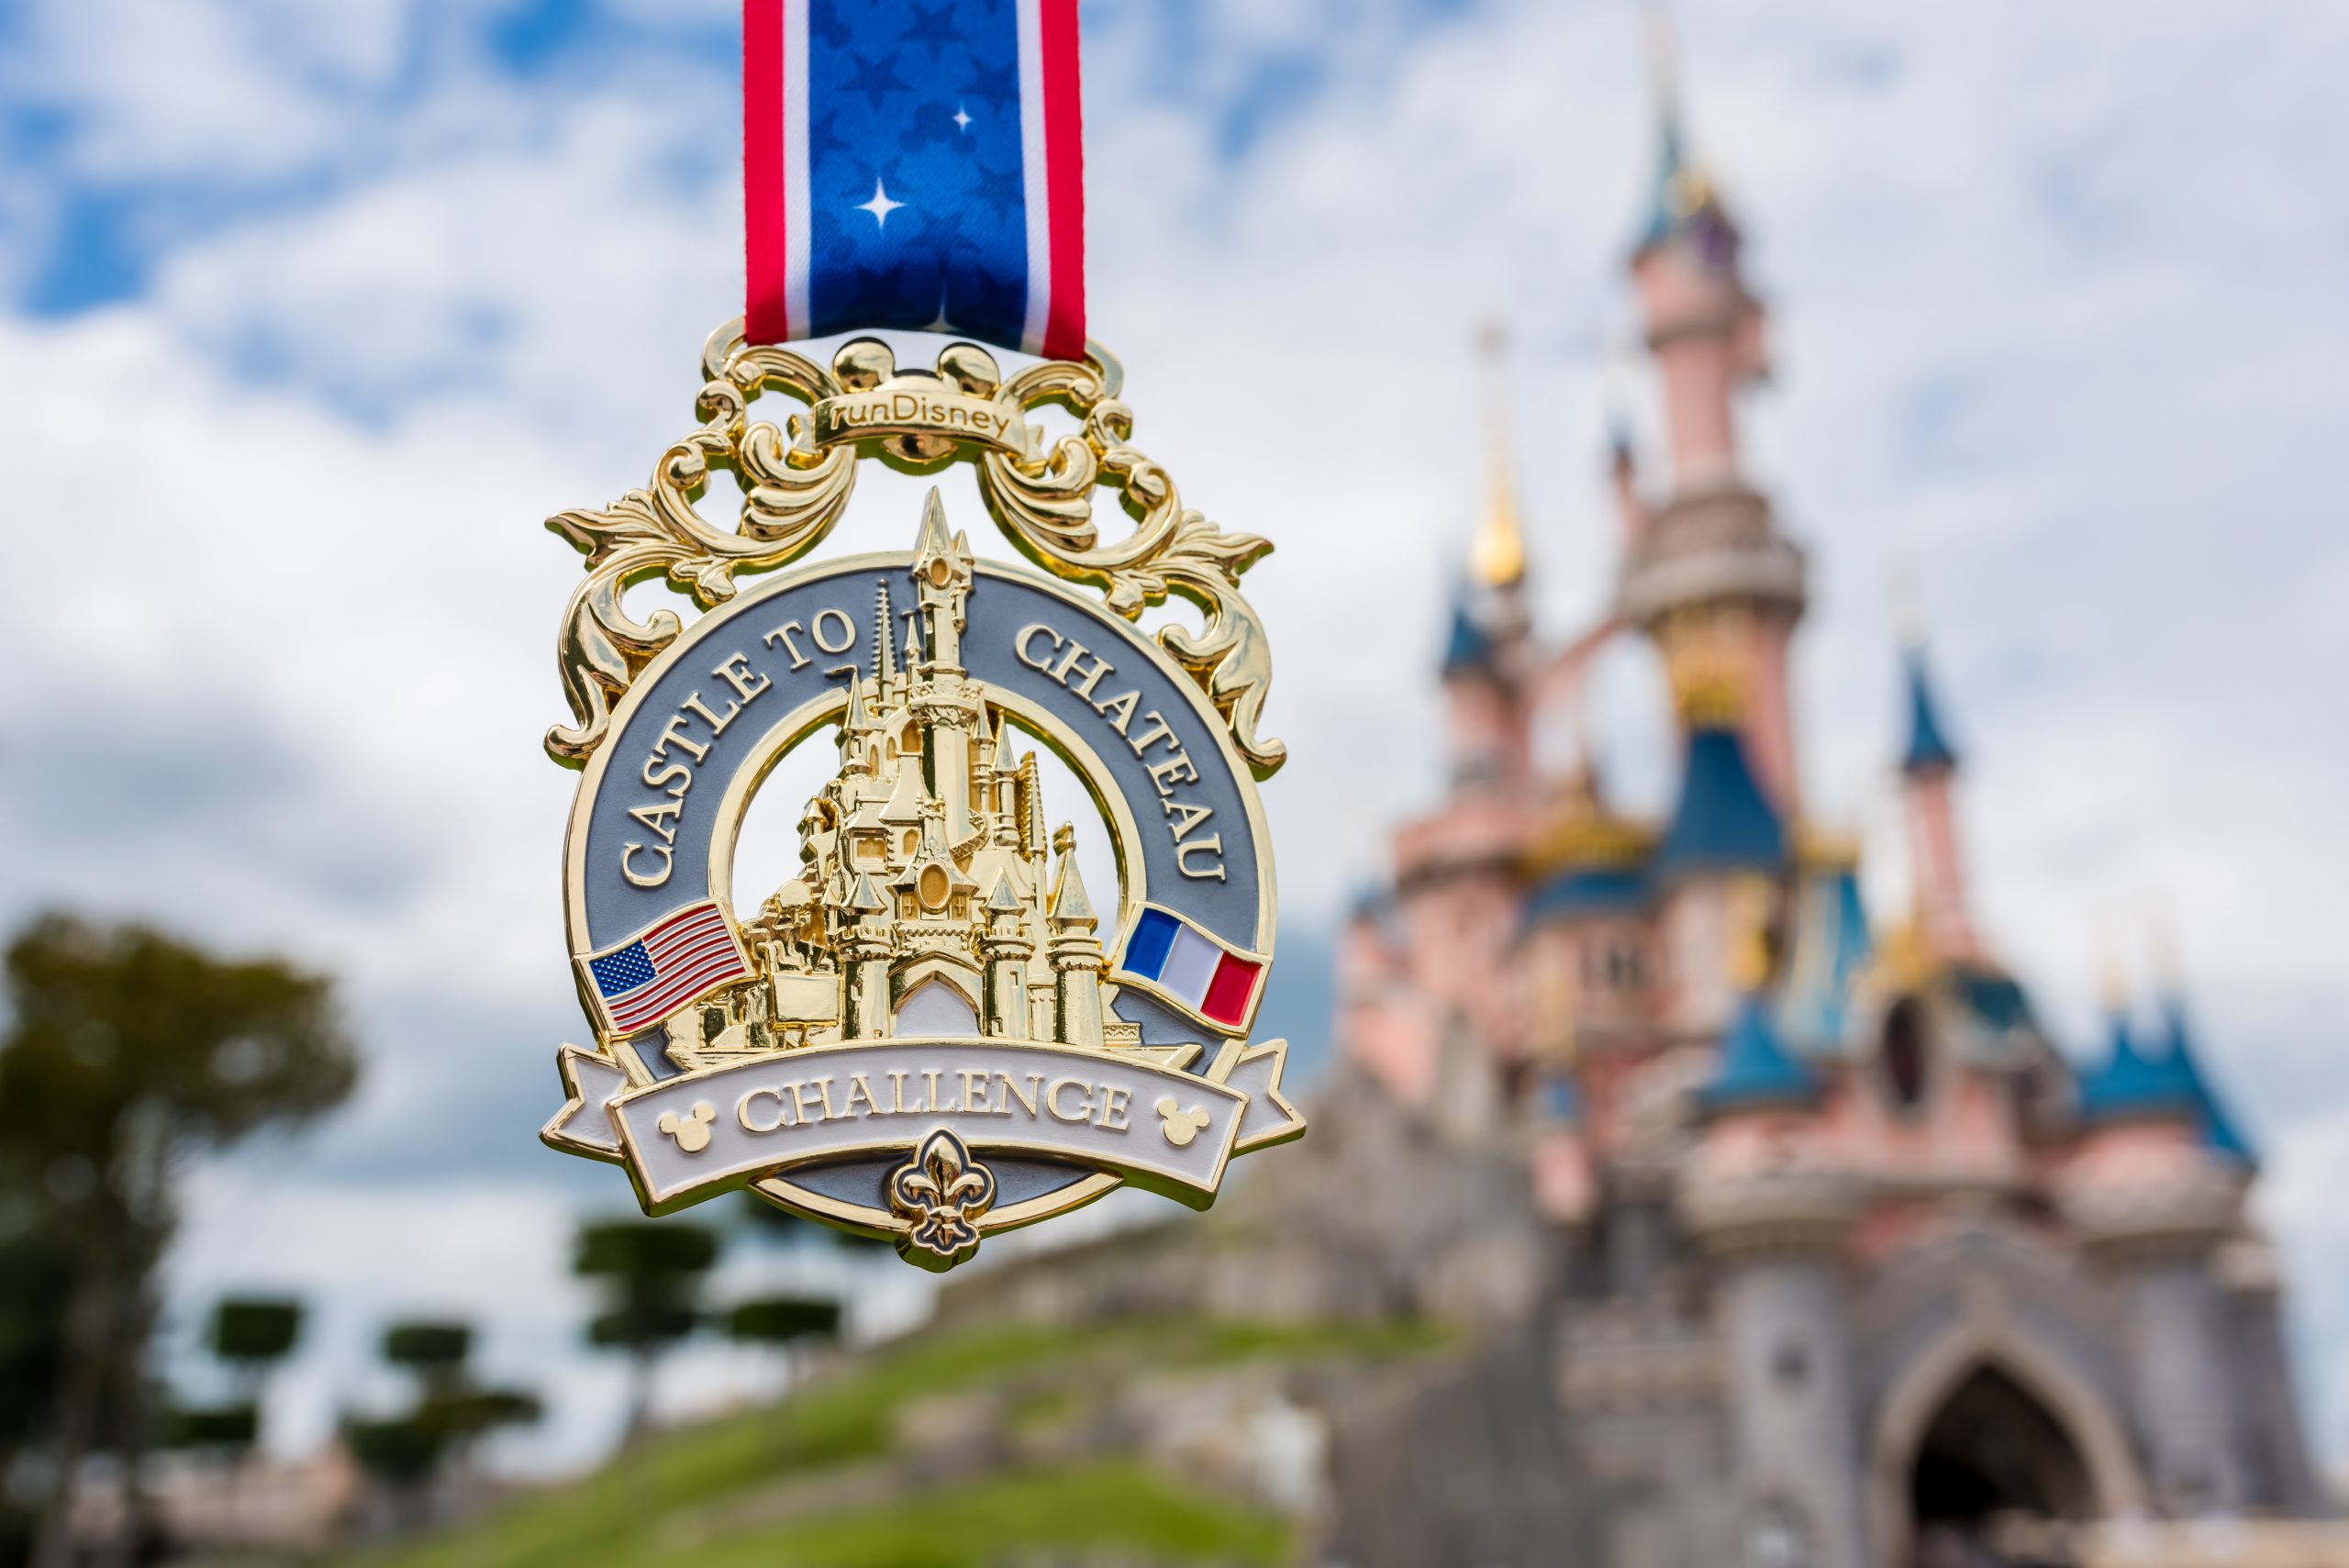 Disneyland Paris Magic Run Medals for 2019 Revealed